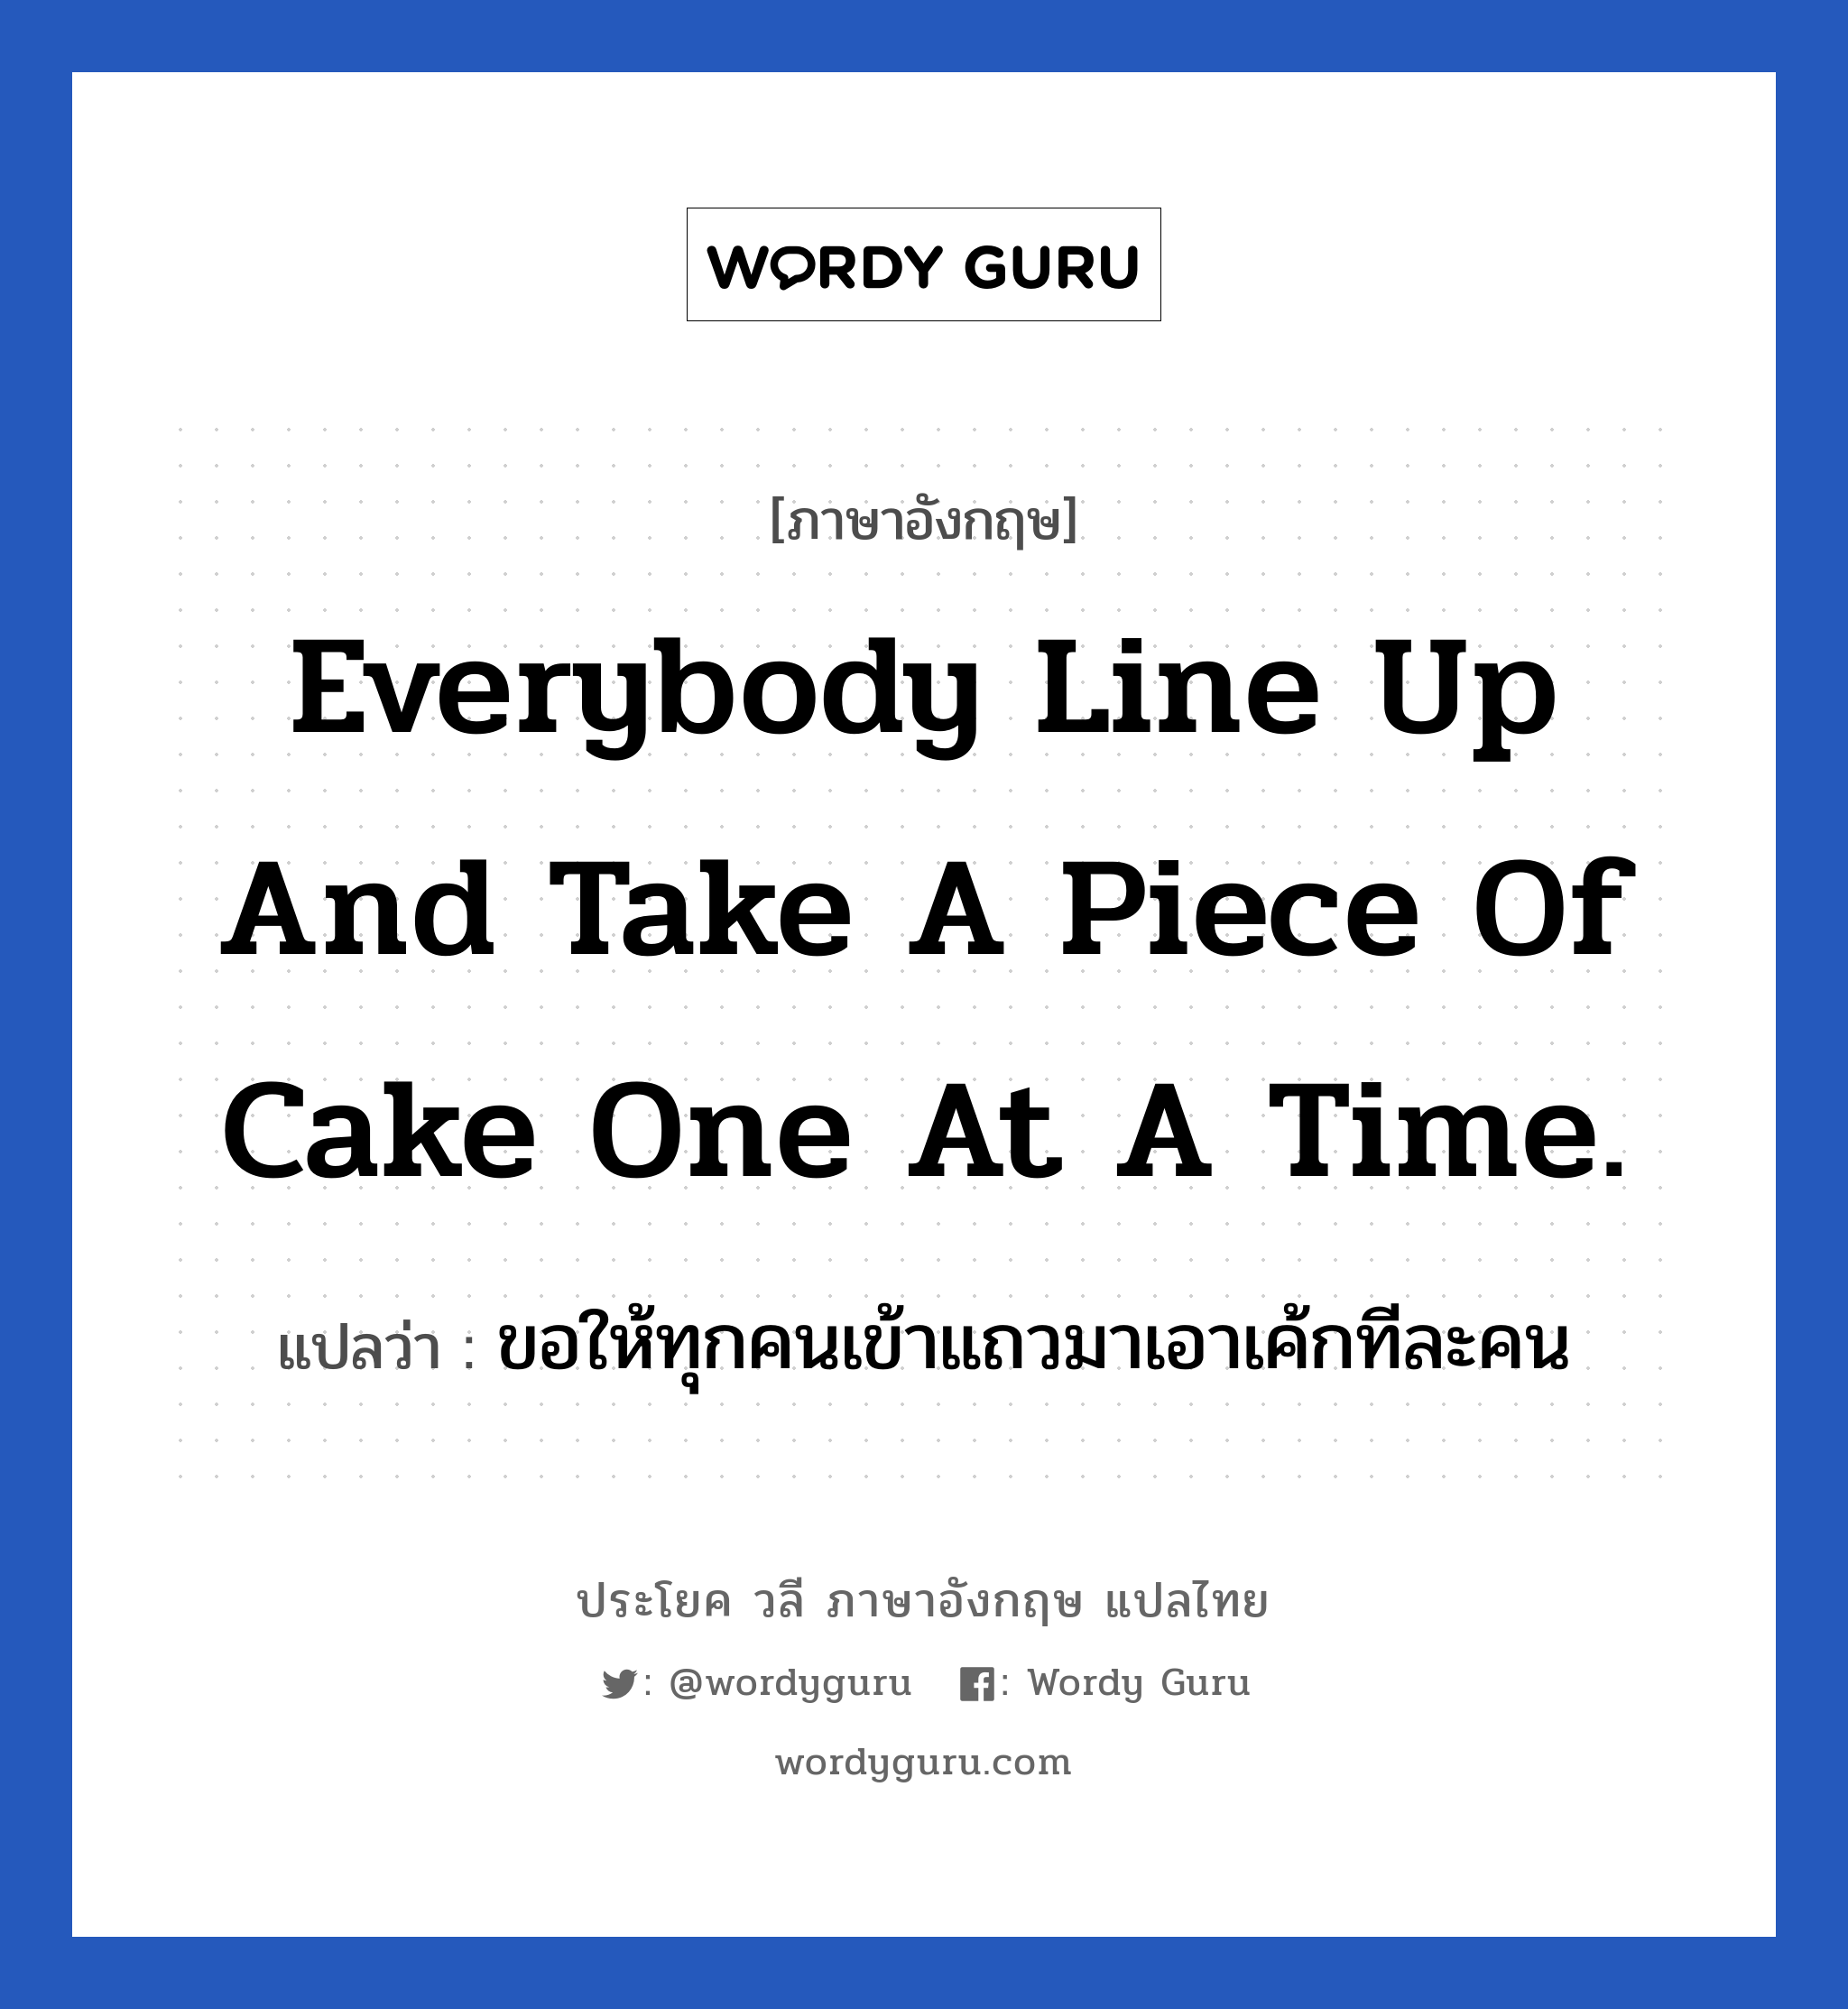 ขอให้ทุกคนเข้าแถวมาเอาเค้กทีละคน ภาษาอังกฤษ?, วลีภาษาอังกฤษ ขอให้ทุกคนเข้าแถวมาเอาเค้กทีละคน แปลว่า Everybody line up and take a piece of cake one at a time.